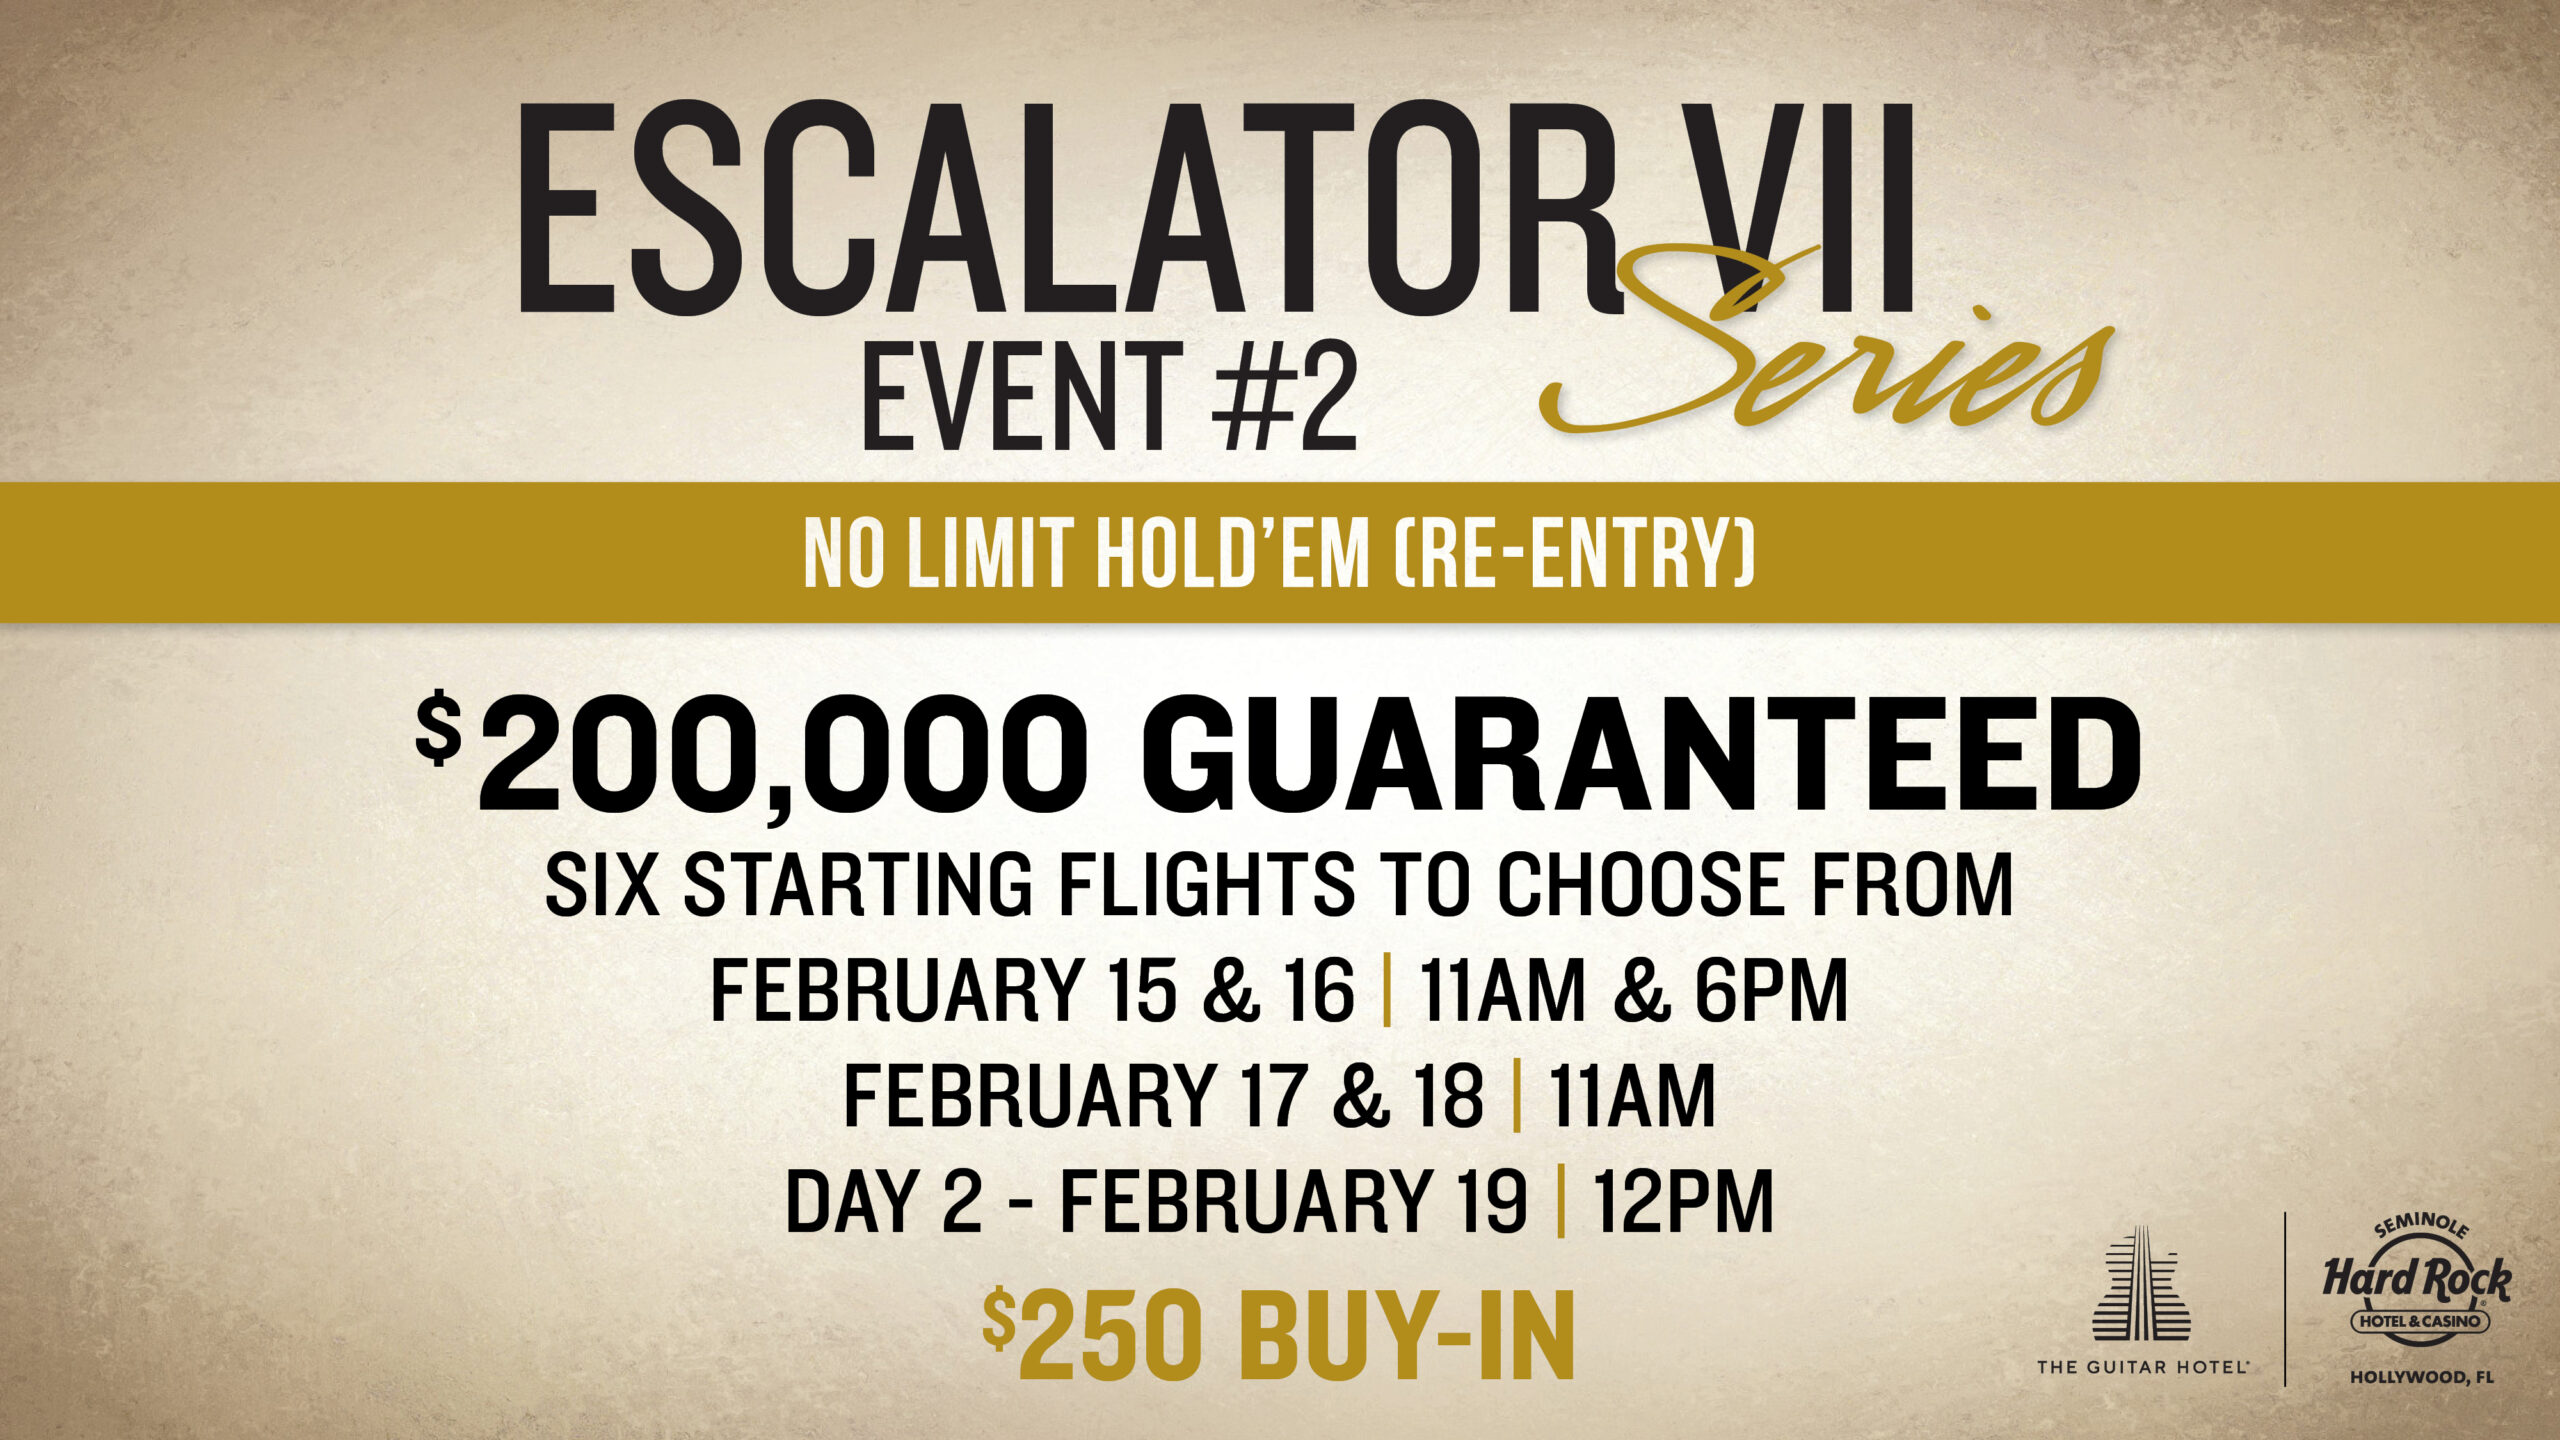 Escalator VII Event # 2 Preview